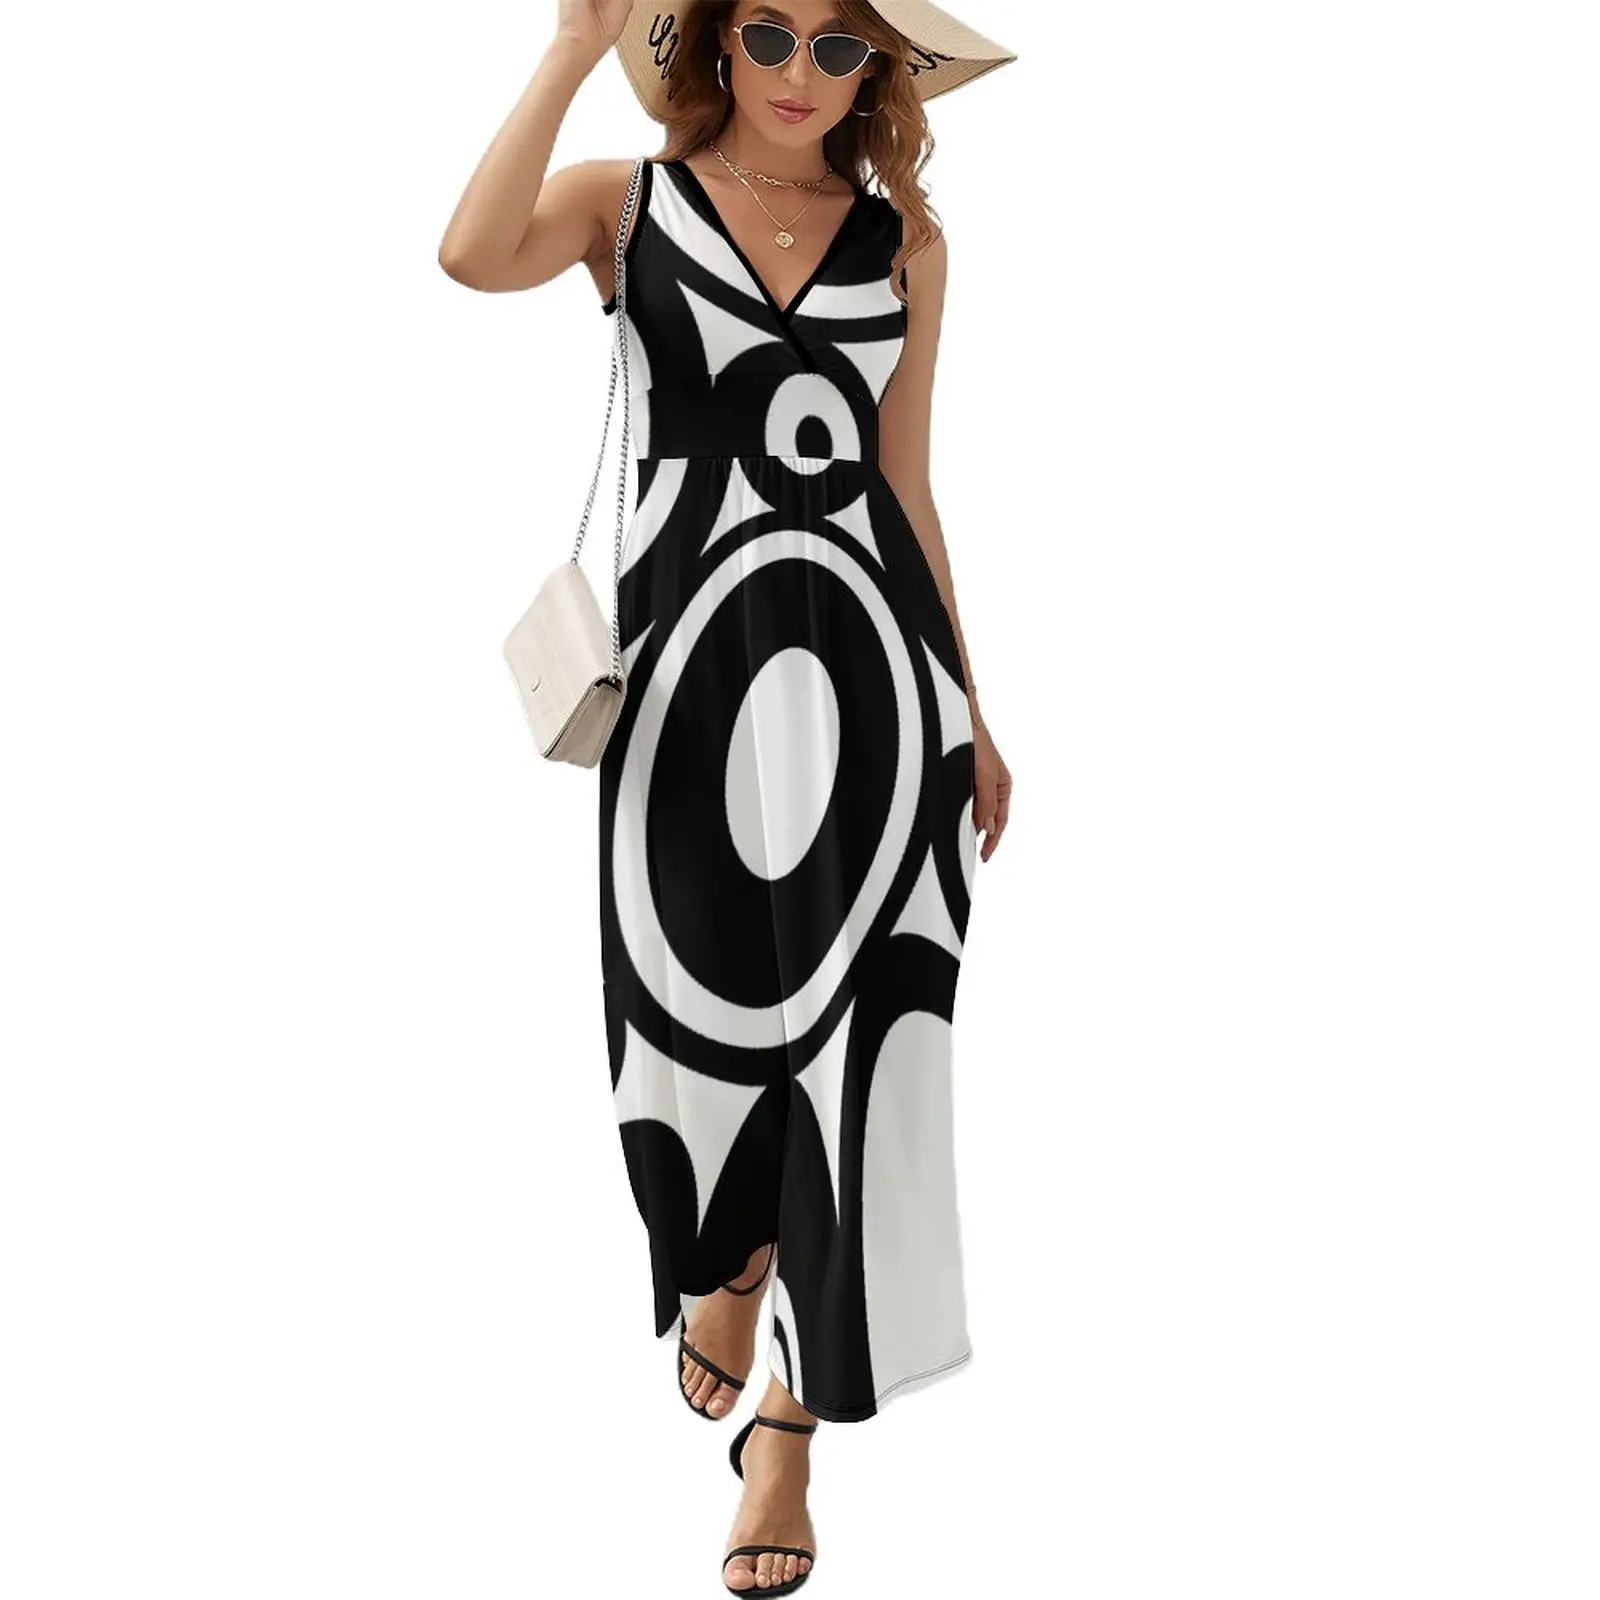 

Retro Black White Circles Pop Art Sleeveless Dress Women's summer dress Evening gown